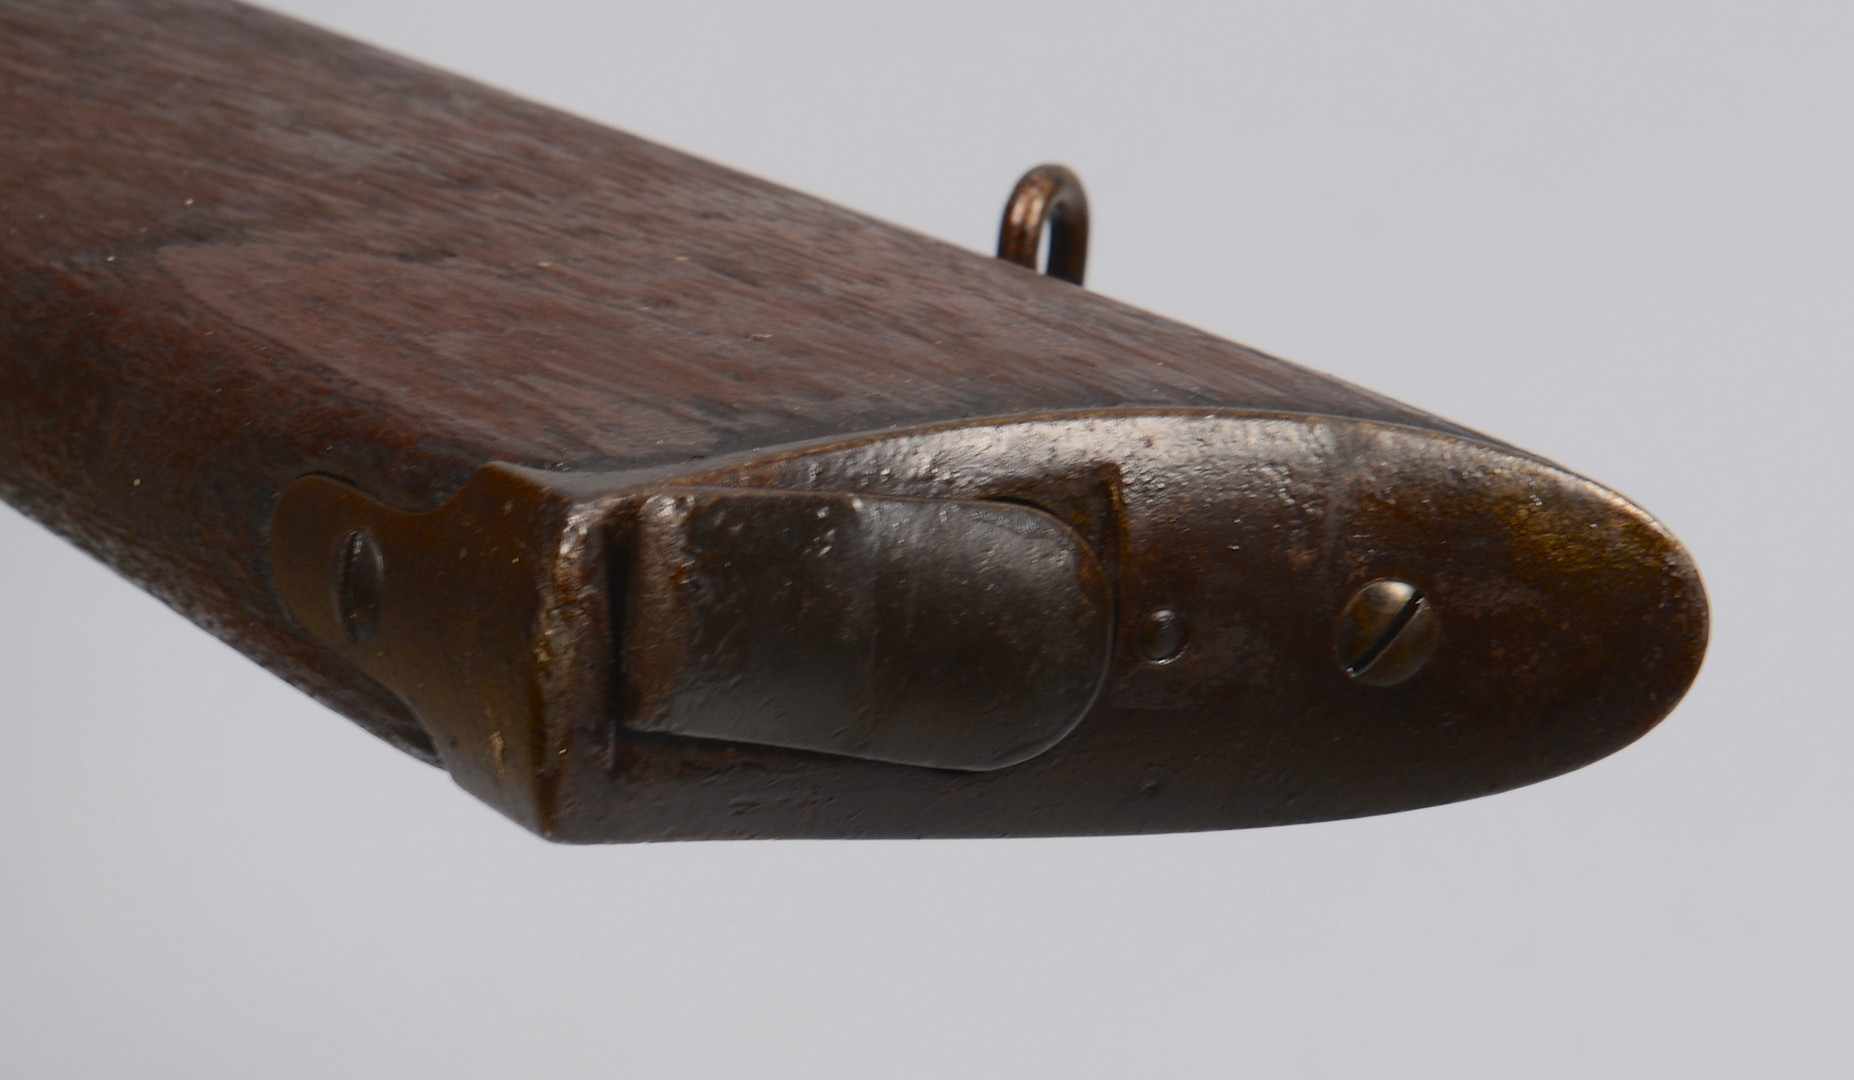 Lot 394: Spencer Model 1860 Carbine